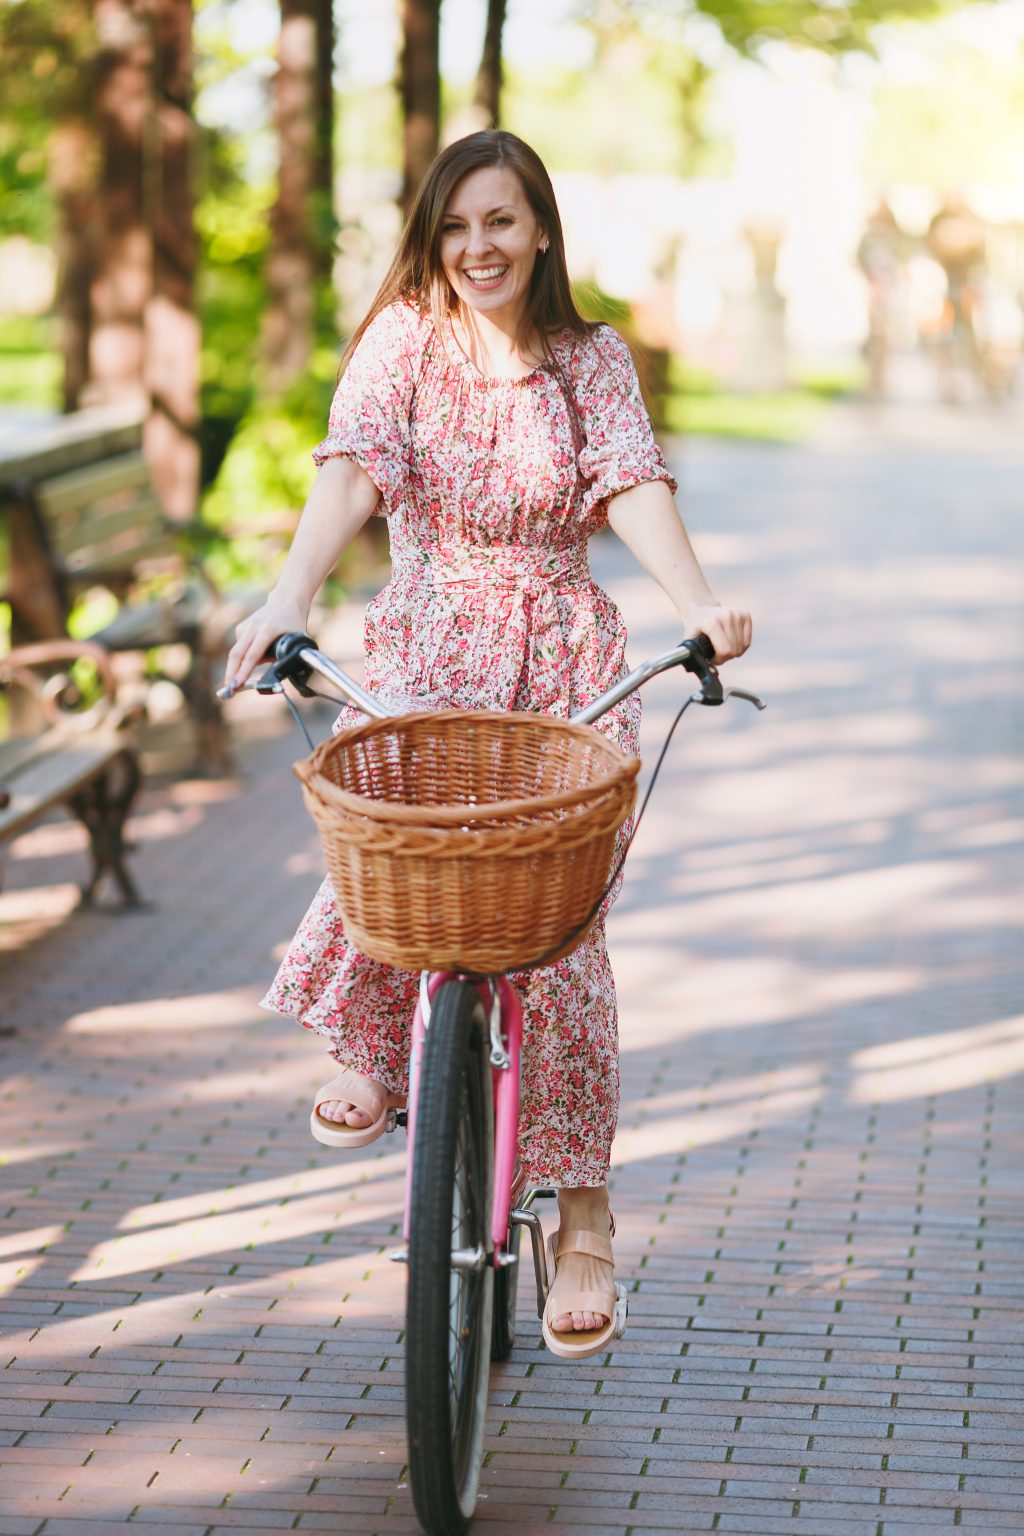 Met lange jurk op de fiets